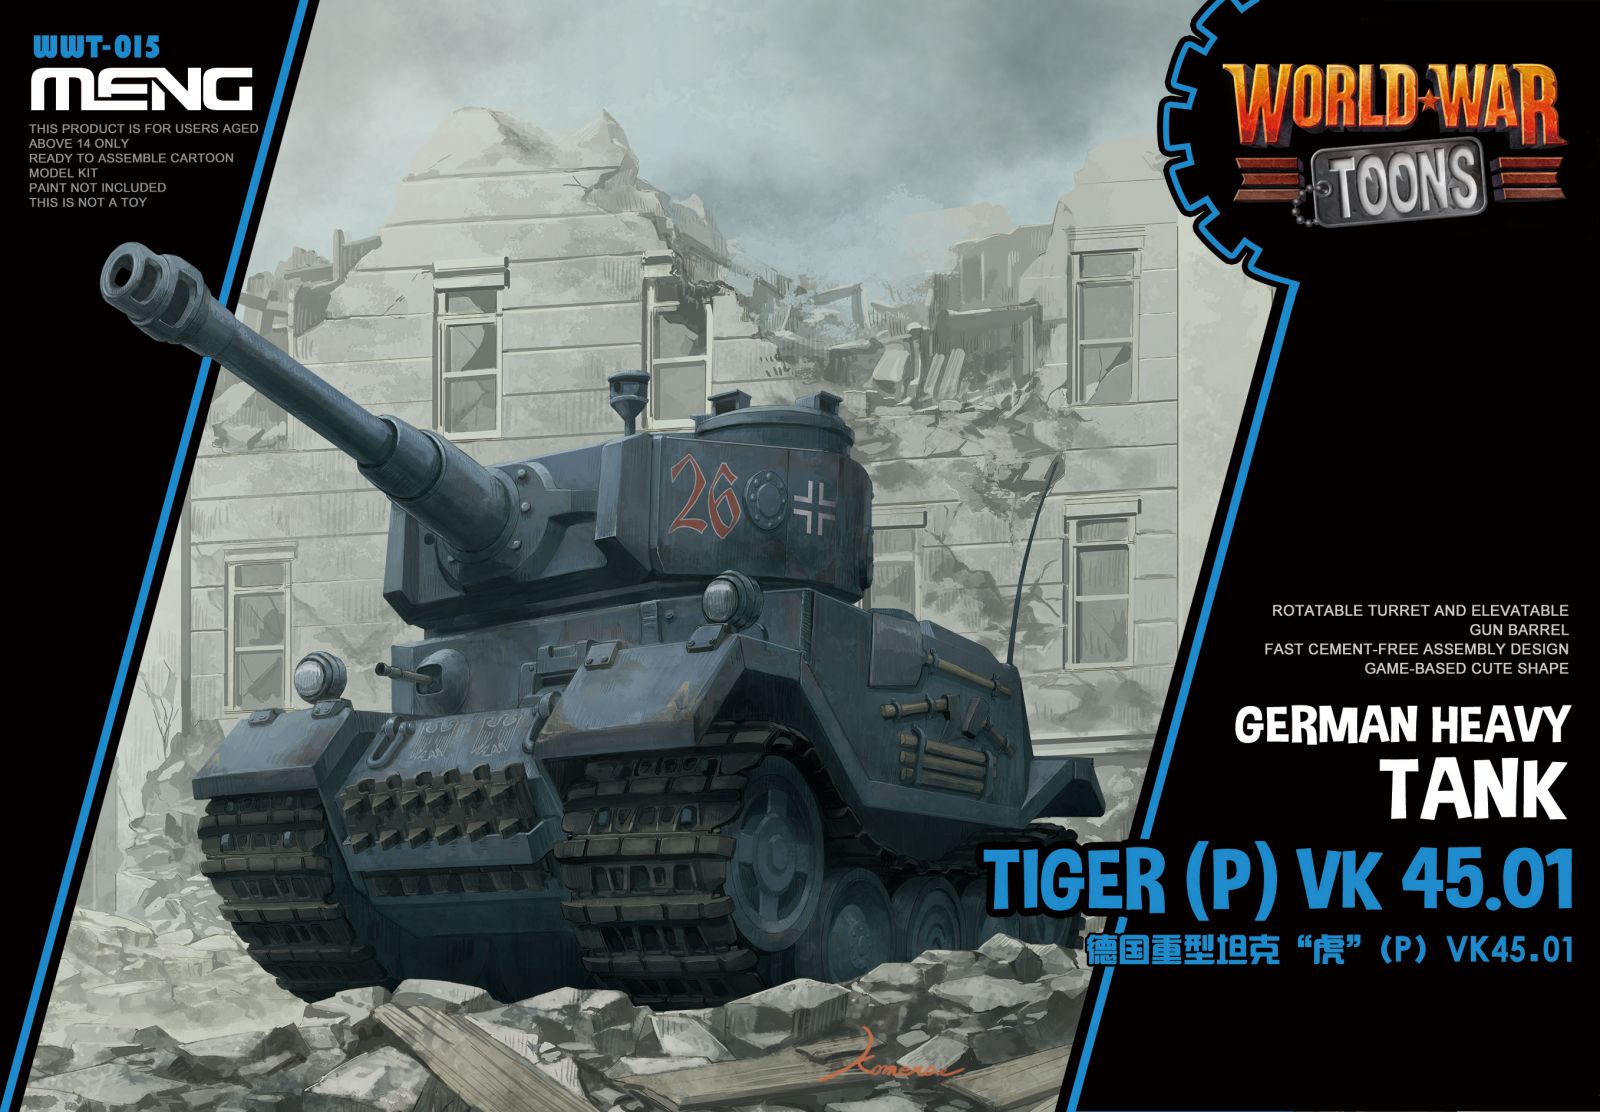 German Heavy Tank Tiger (P) VK 45.01 (Cartoon model)